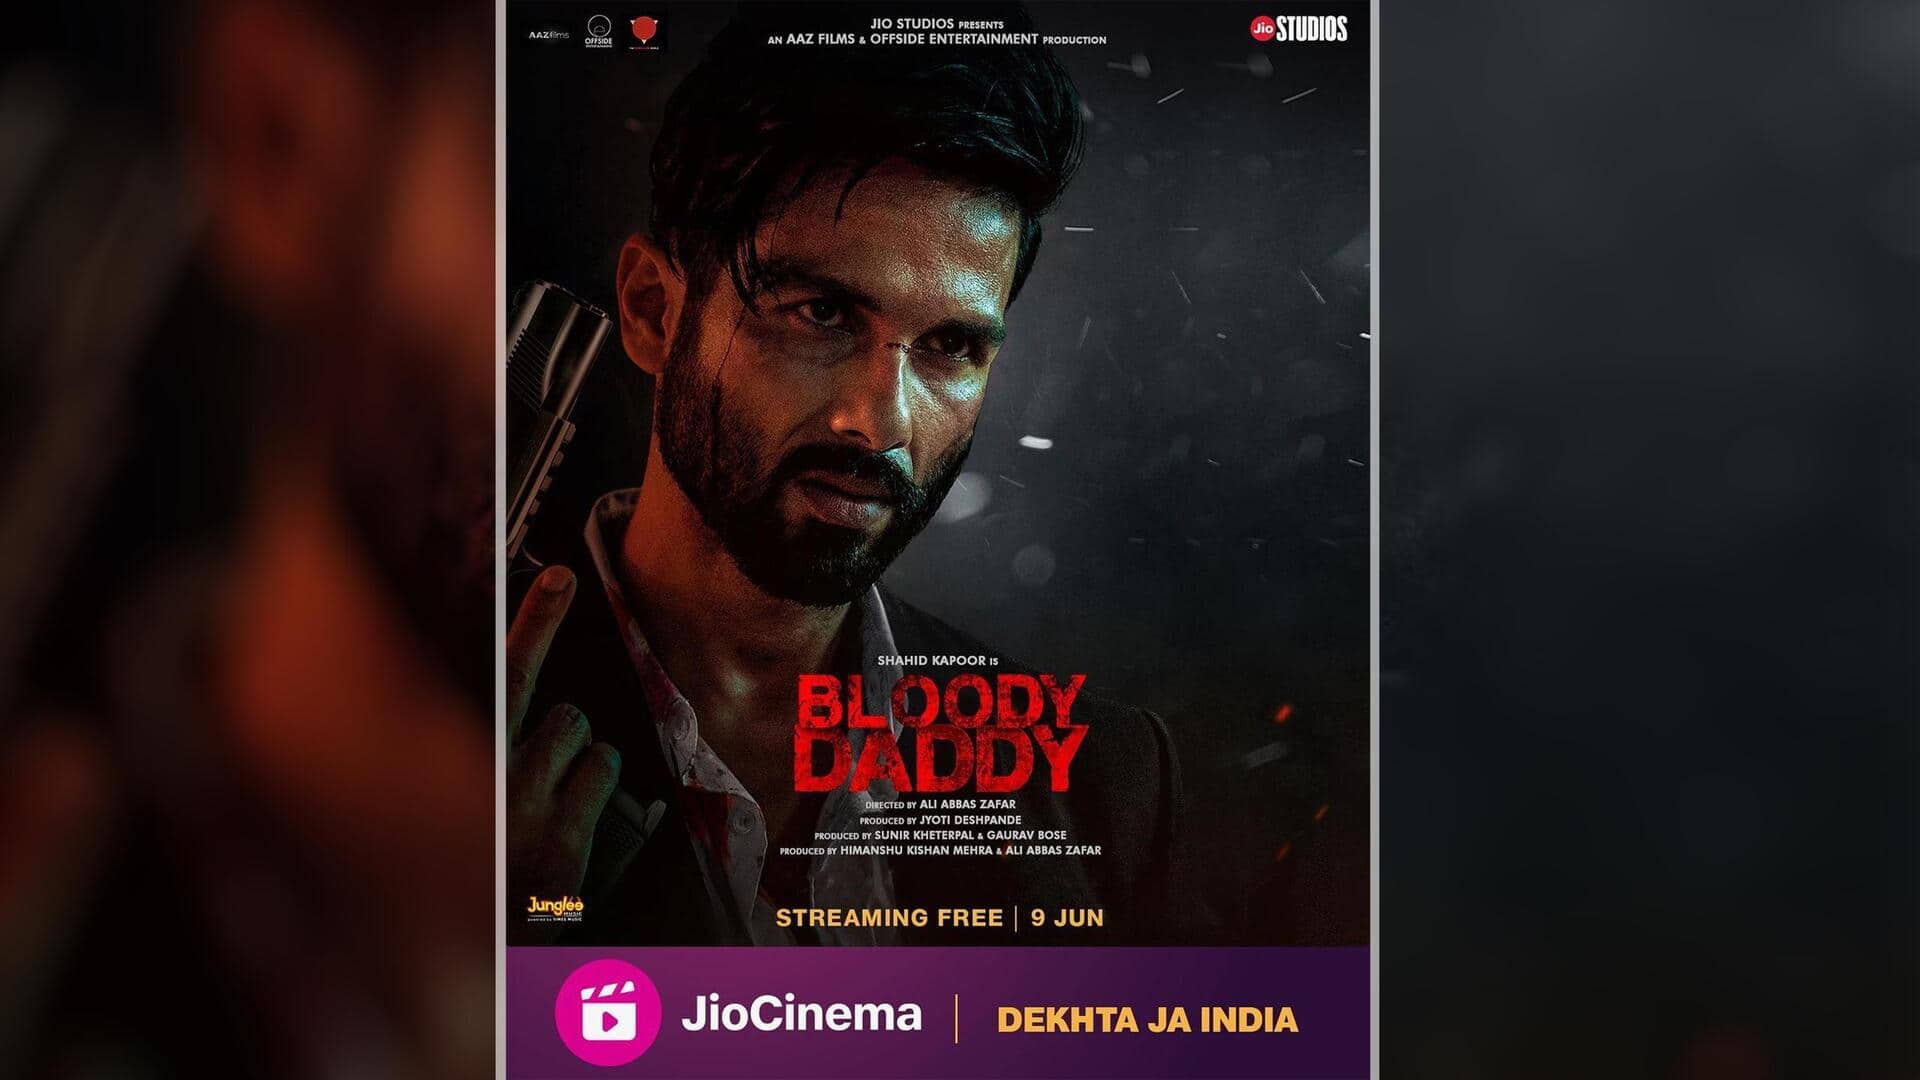 फिल्म 'ब्लडी डैडी' का ट्रेलर रिलीज, शाहिद कपूर ने छुड़ाए दुश्मनों के छक्के